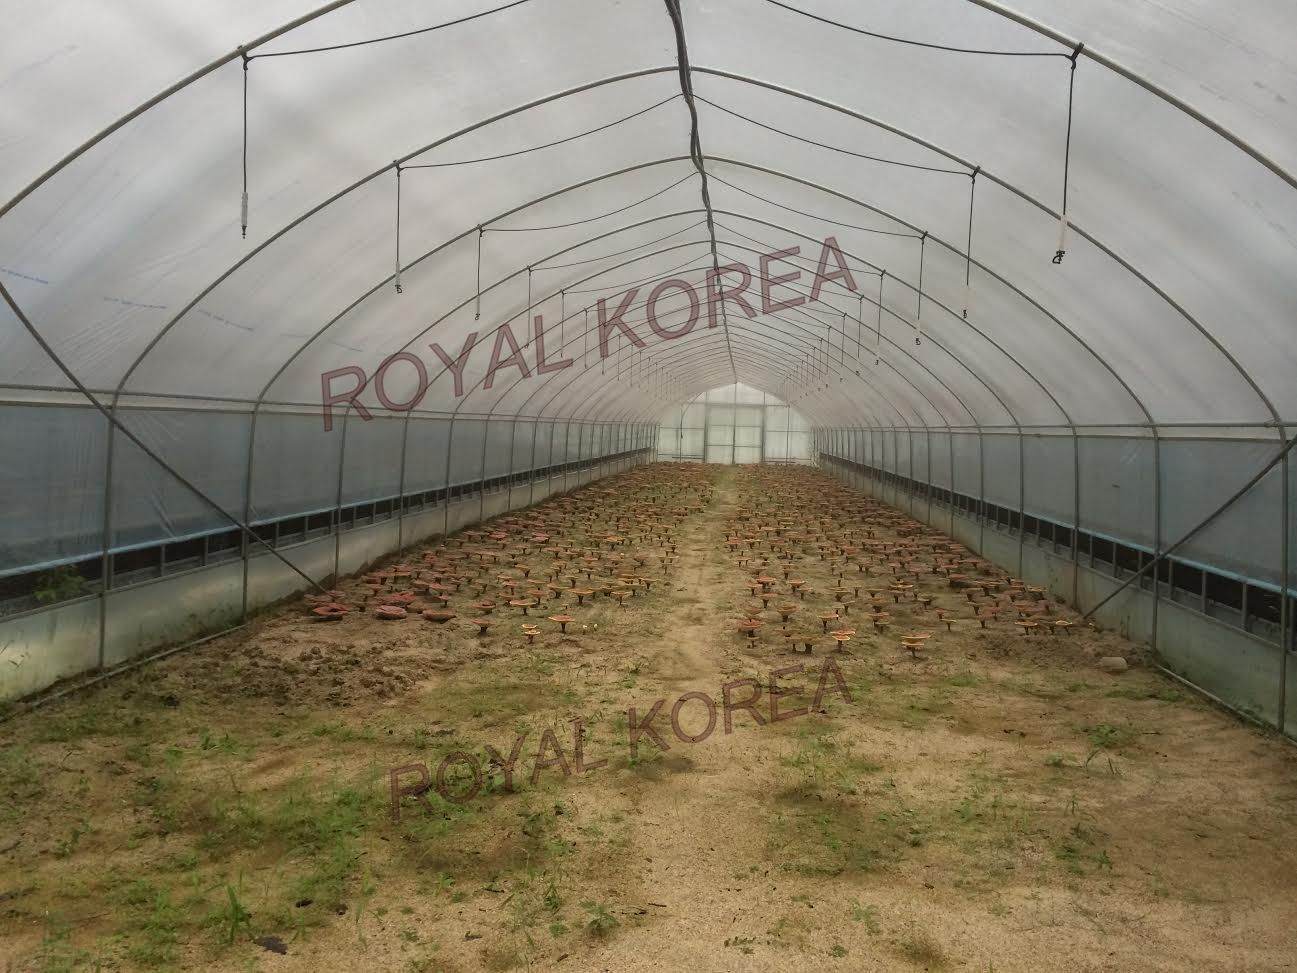 Hình ảnh nhà trồng Nấm tại Hàn Quốc